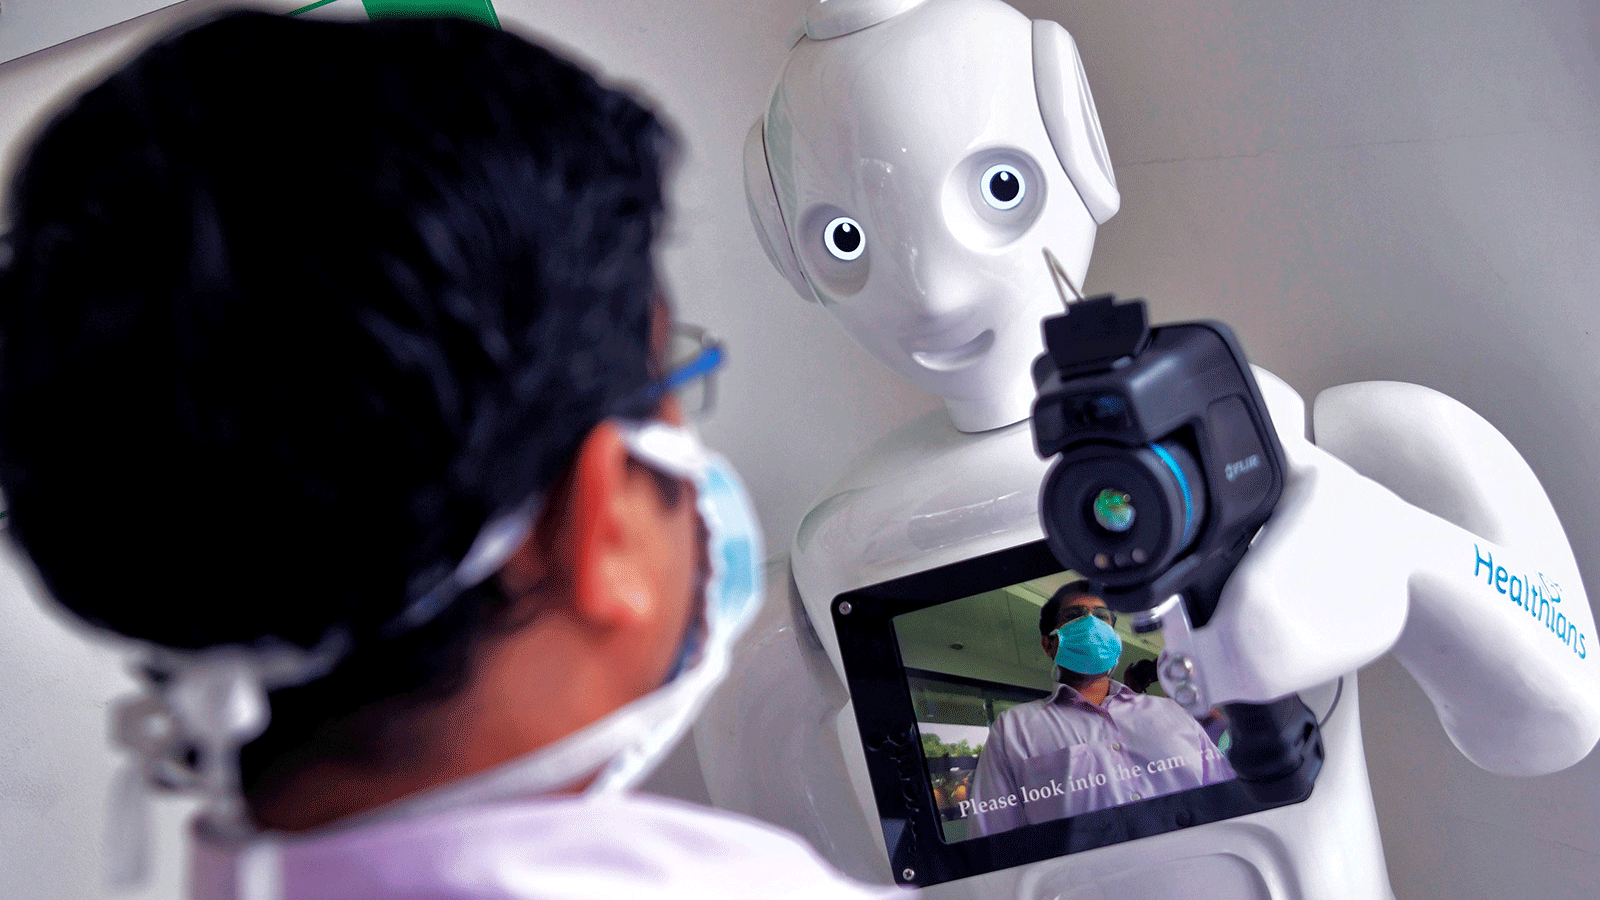  عامل في المستشفى يقف أمام روبوت مزود بكاميرا حرارية مثبتة لإجراء فحوصات أولية للمساعدة في منع انتشار COVID-19. حاليًا ،تنطبق معايير قانونية مختلفة على البشر والذكاء الاصطناعي الذين يؤدون نفس المهام.